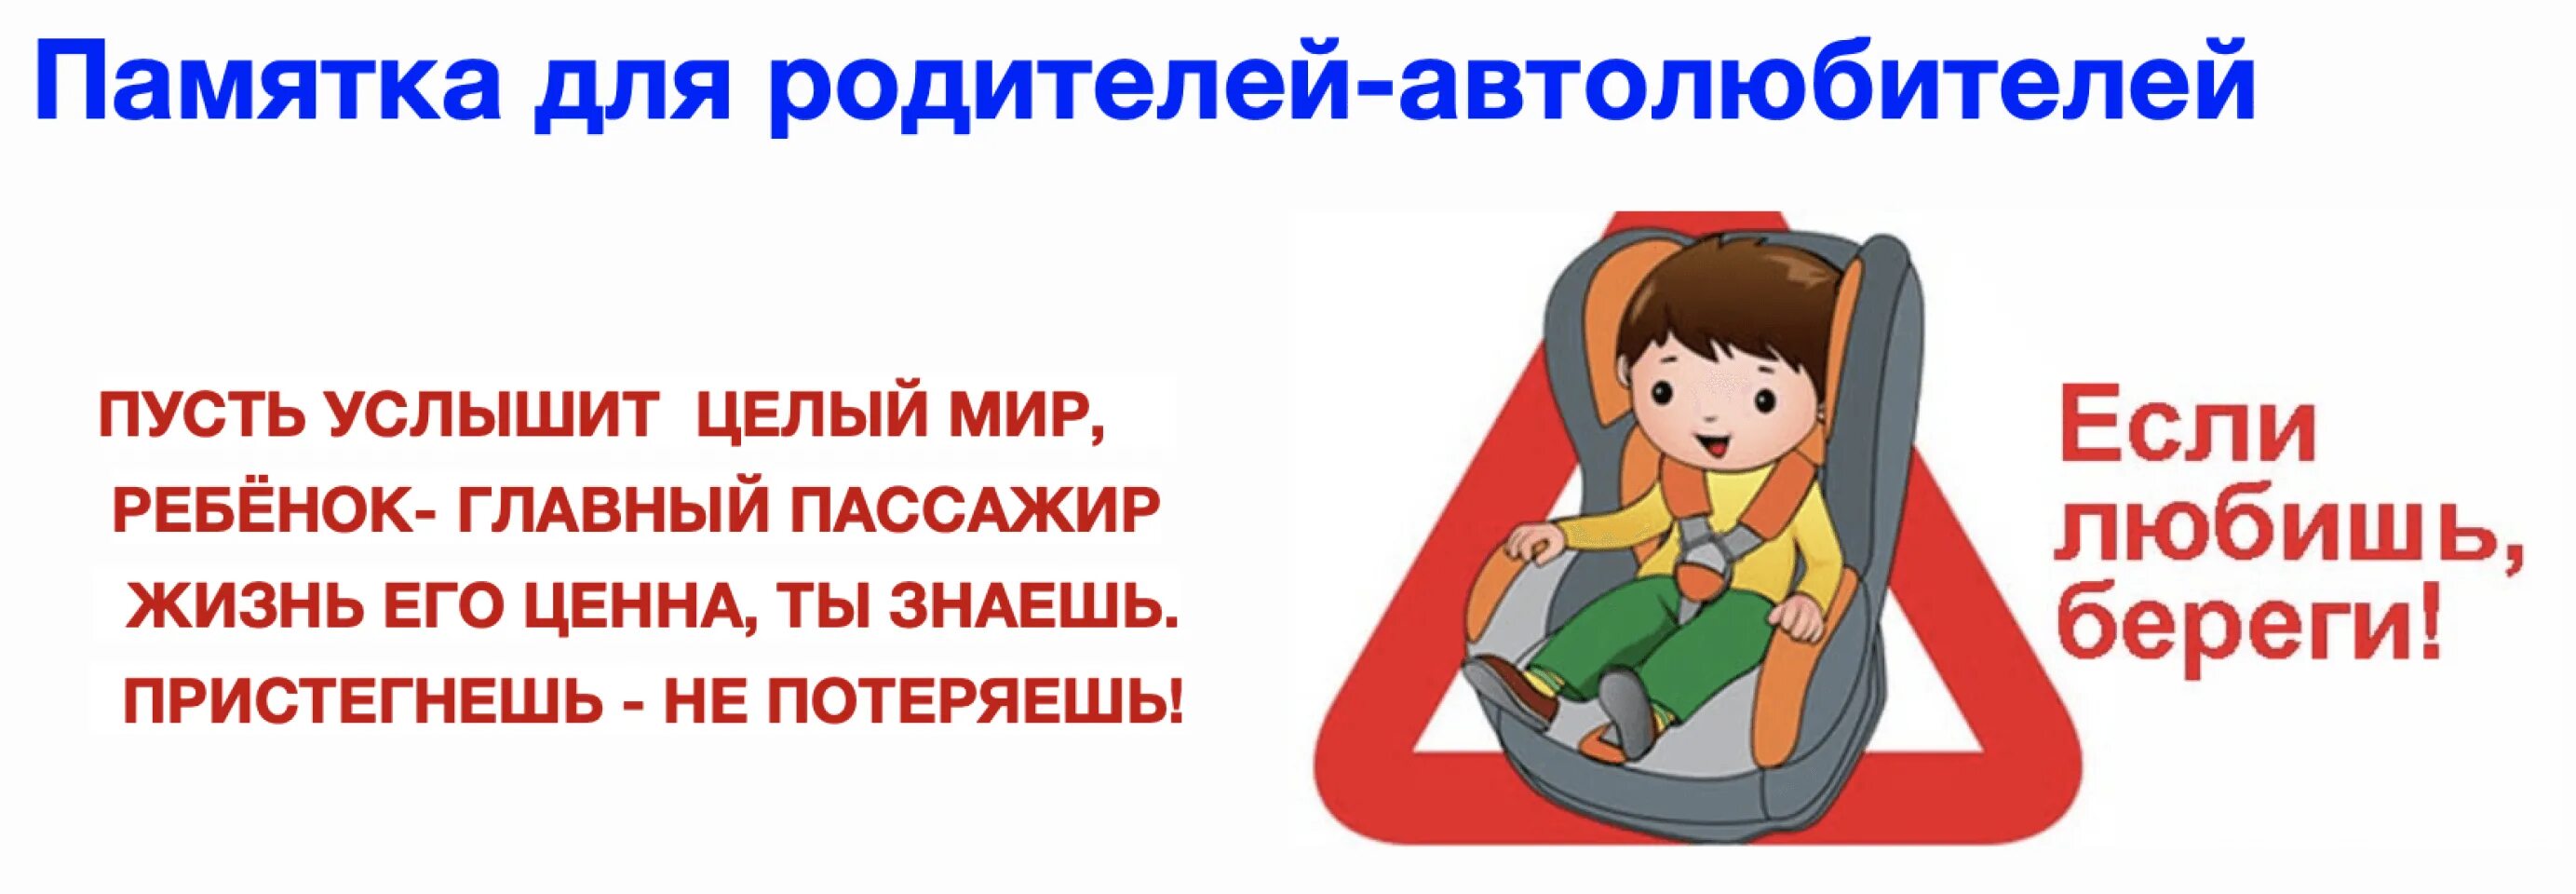 Правила про ремень безопасности. Ребенок главный пассажир памятка для родителей. Автокресло детям памятка для детей. Безопасность детей в автомобиле. Родители пристегните детей ремнями безопасности.